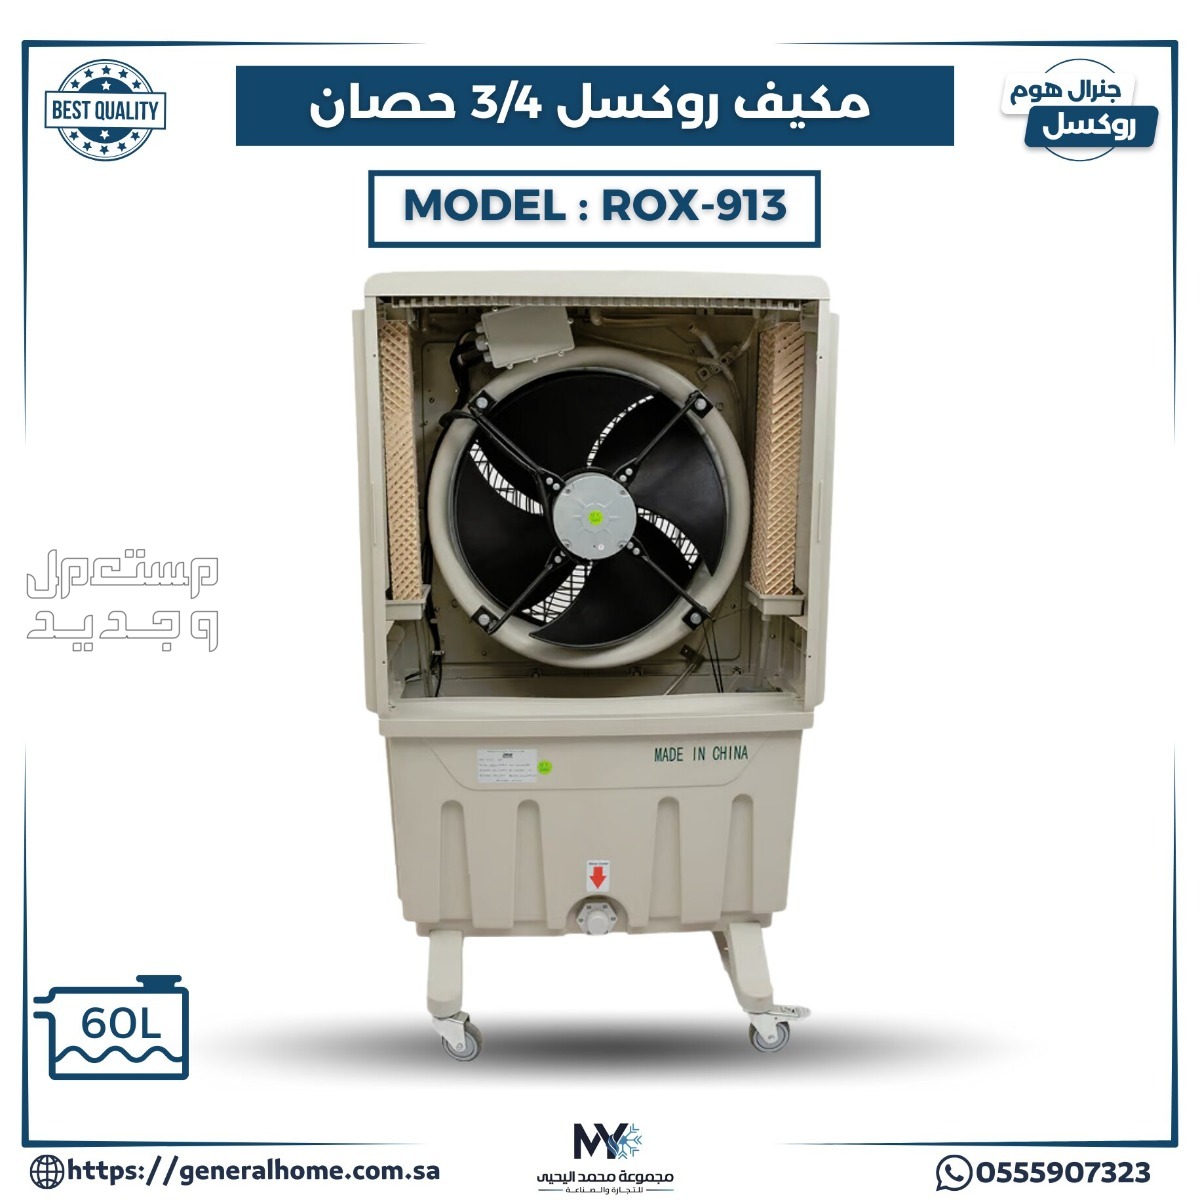 عروض اليحيى للمكيفات بالأنواع والمواصفات والصور والأسعار في العراق مكيف روكسل 3/4 حصان موديل ROX-913